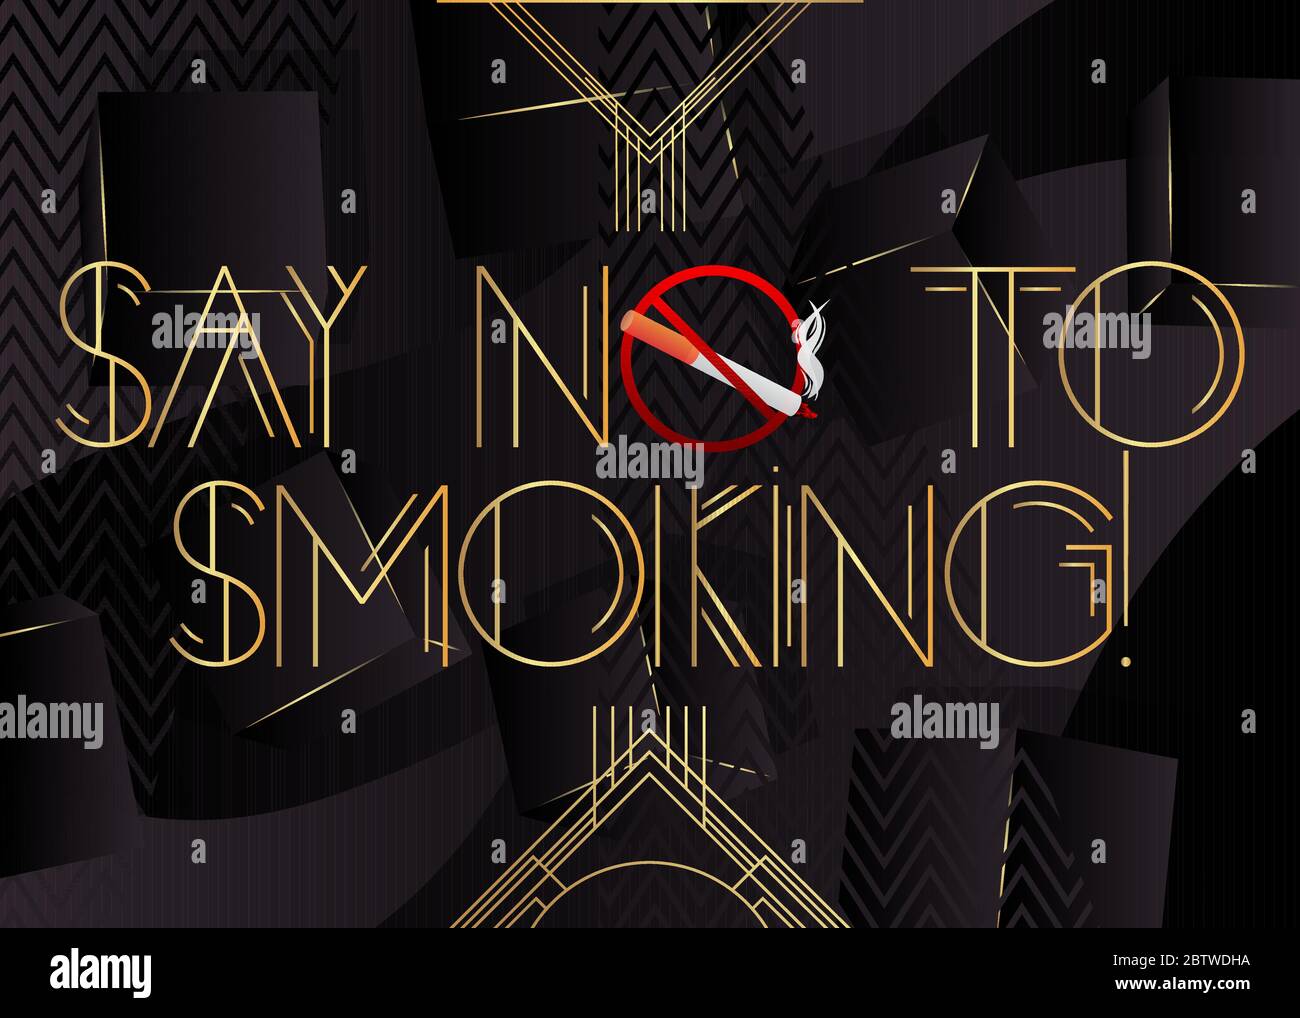 Art Deco Say No to Smoking! Text. Dekorative Grußkarte, Schild mit Vintage-Buchstaben. Stock Vektor